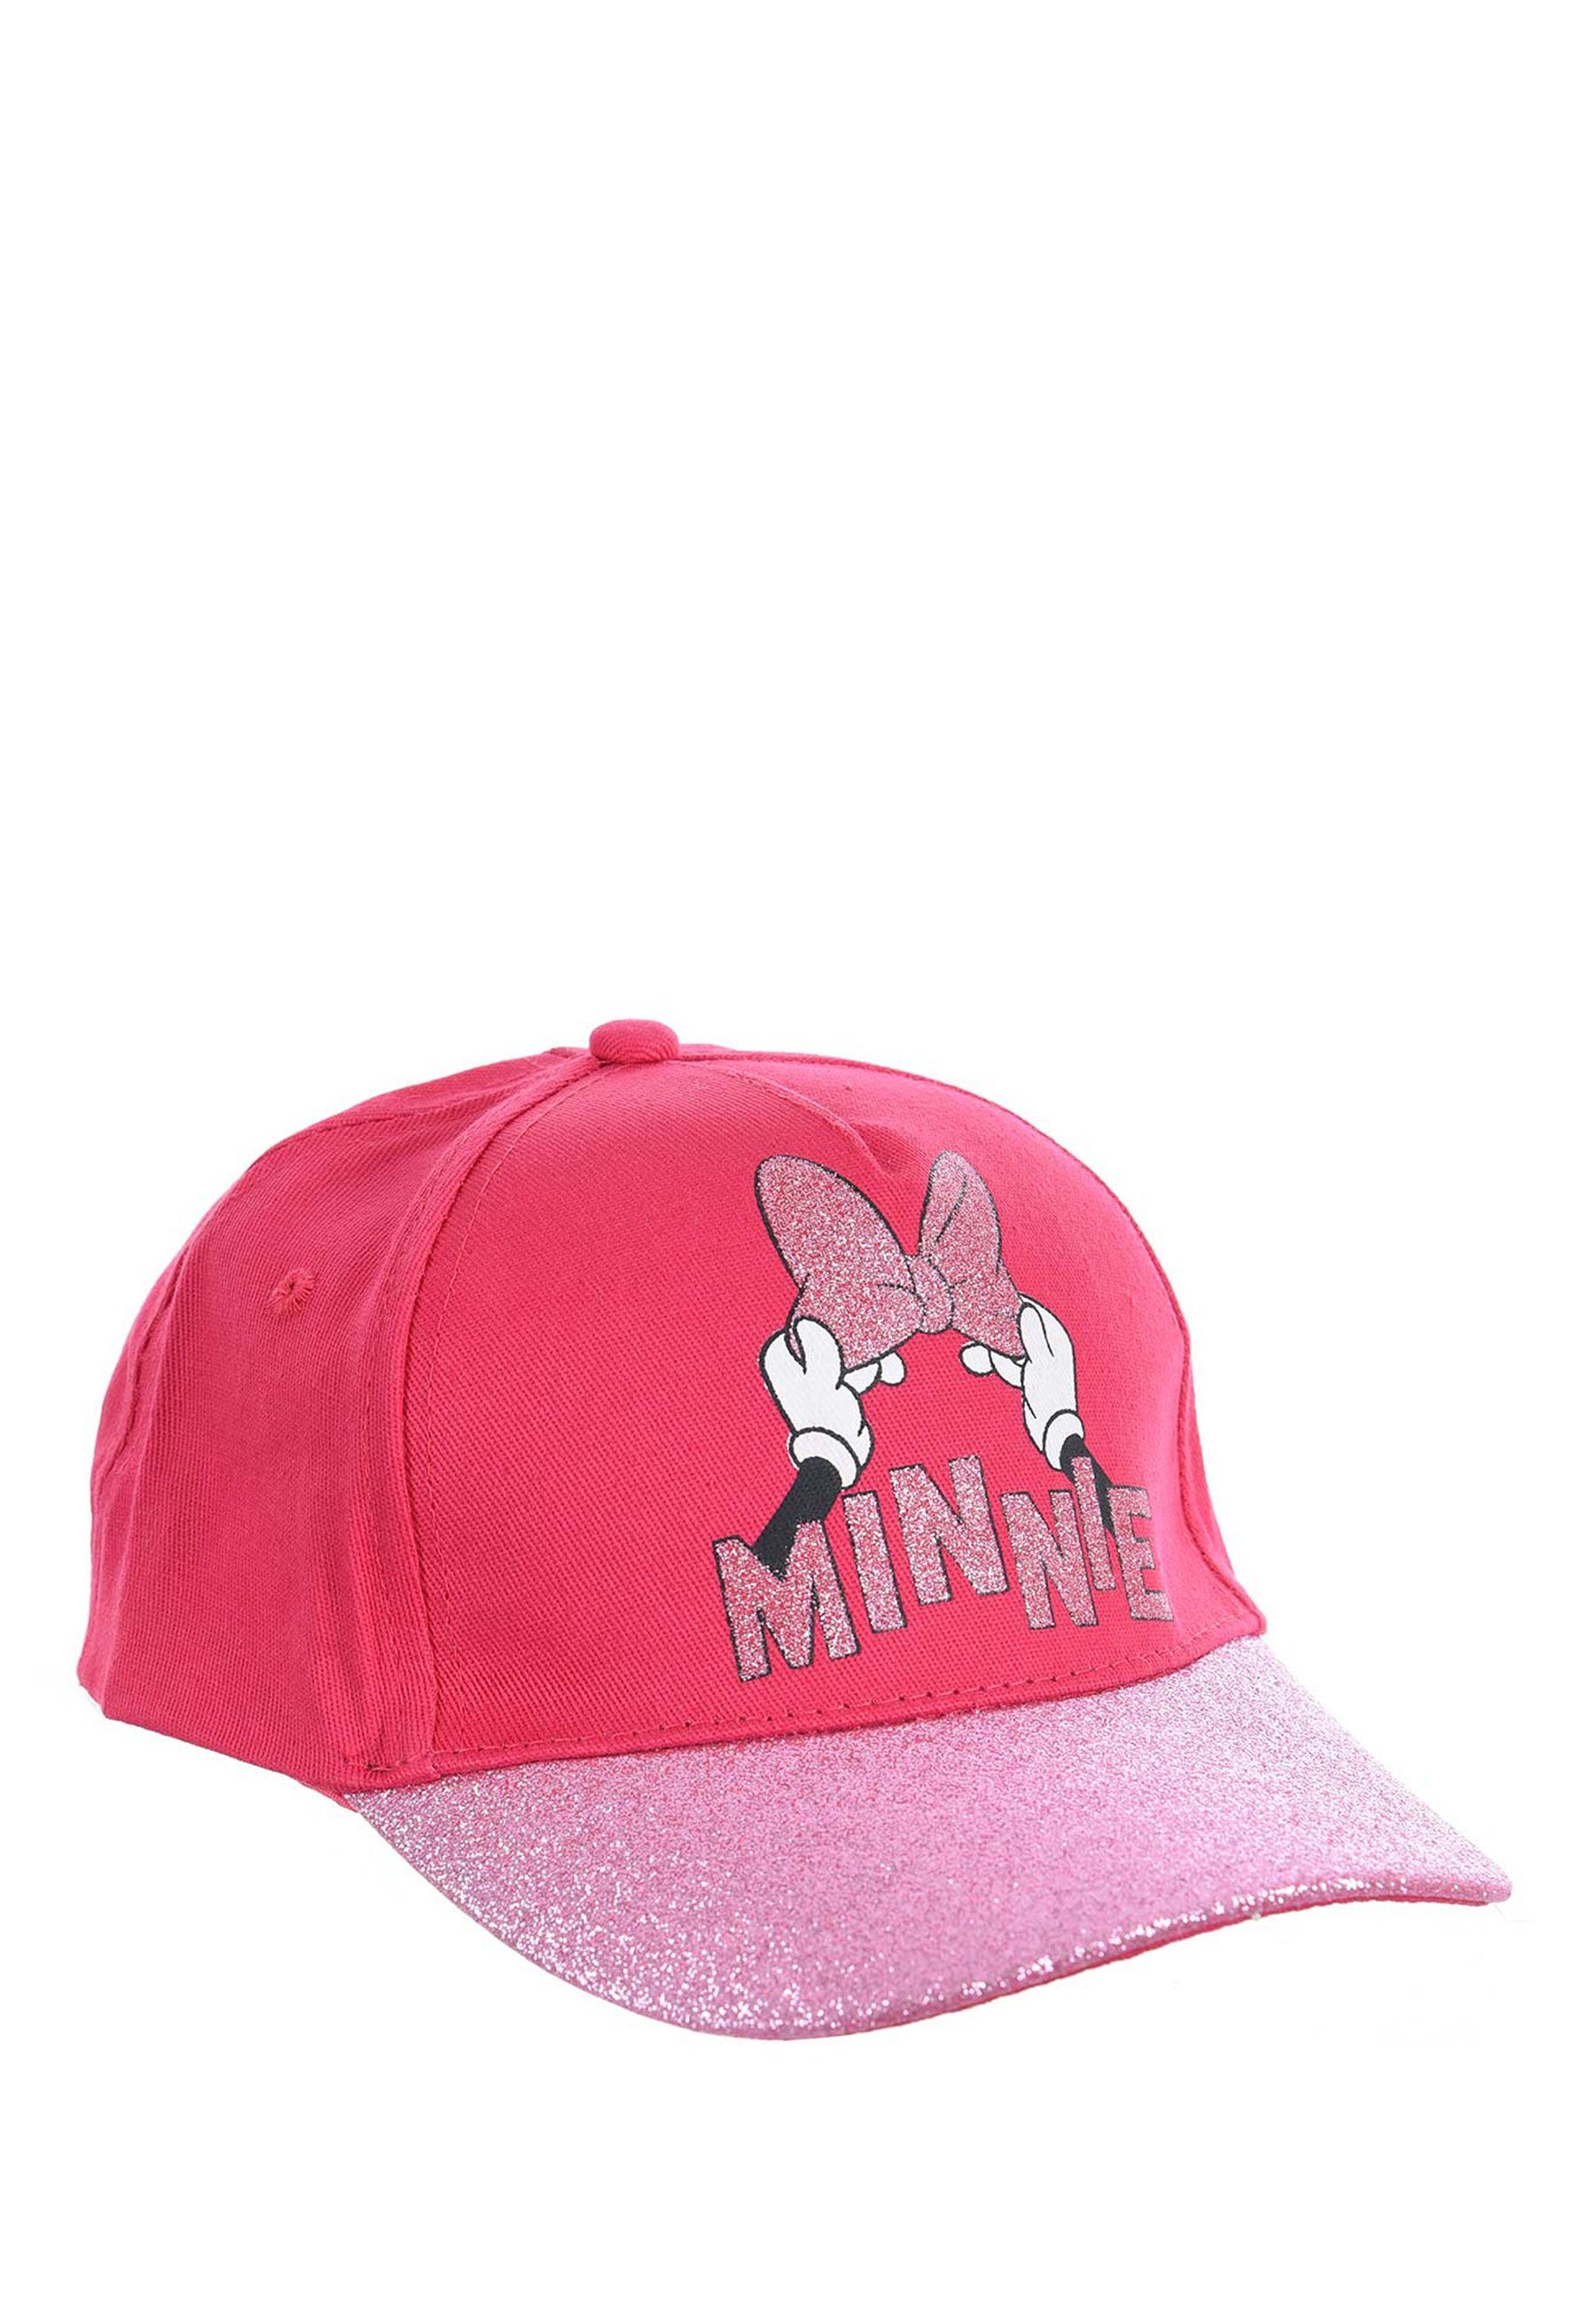 Disney Minnie Baseball Pink Cap Kappe Mütze Mouse